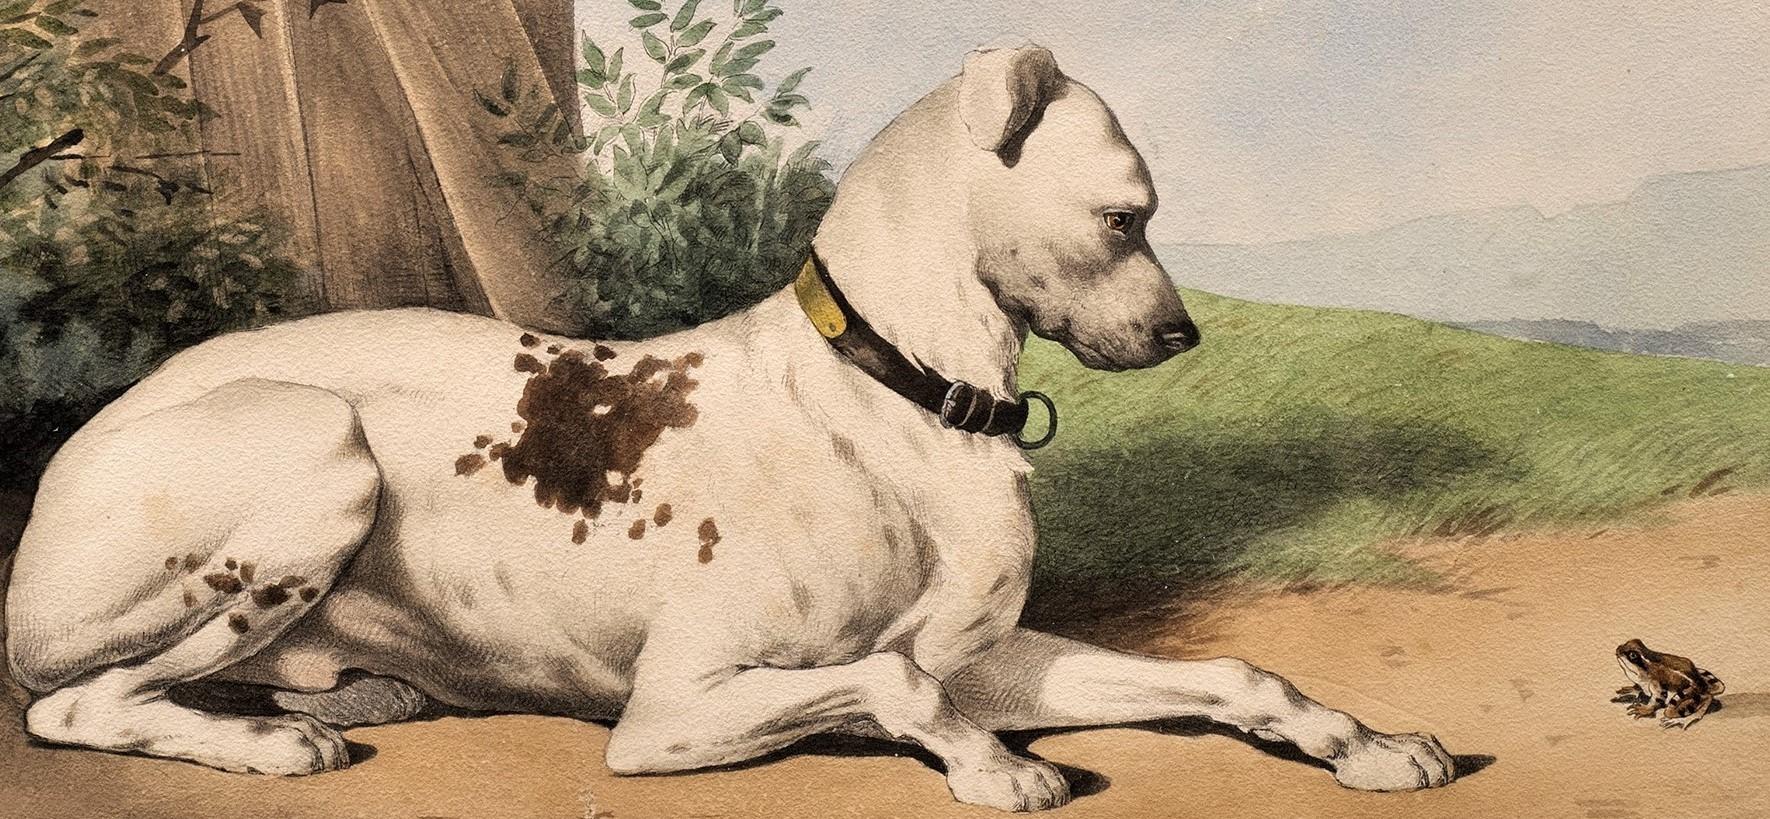 Antikes Hundeporträt 
Lithographie nach dem Geschmack von Alfred De Dreux
Bulldogge und Frosch
Frankreich, um 1870 
Lithographie
25 5/8 x 19 5/8 (28 x 20 Rahmen) Zoll

Sechs Lithografien von Hundeporträts.

Jede Hundedarstellung ist sehr